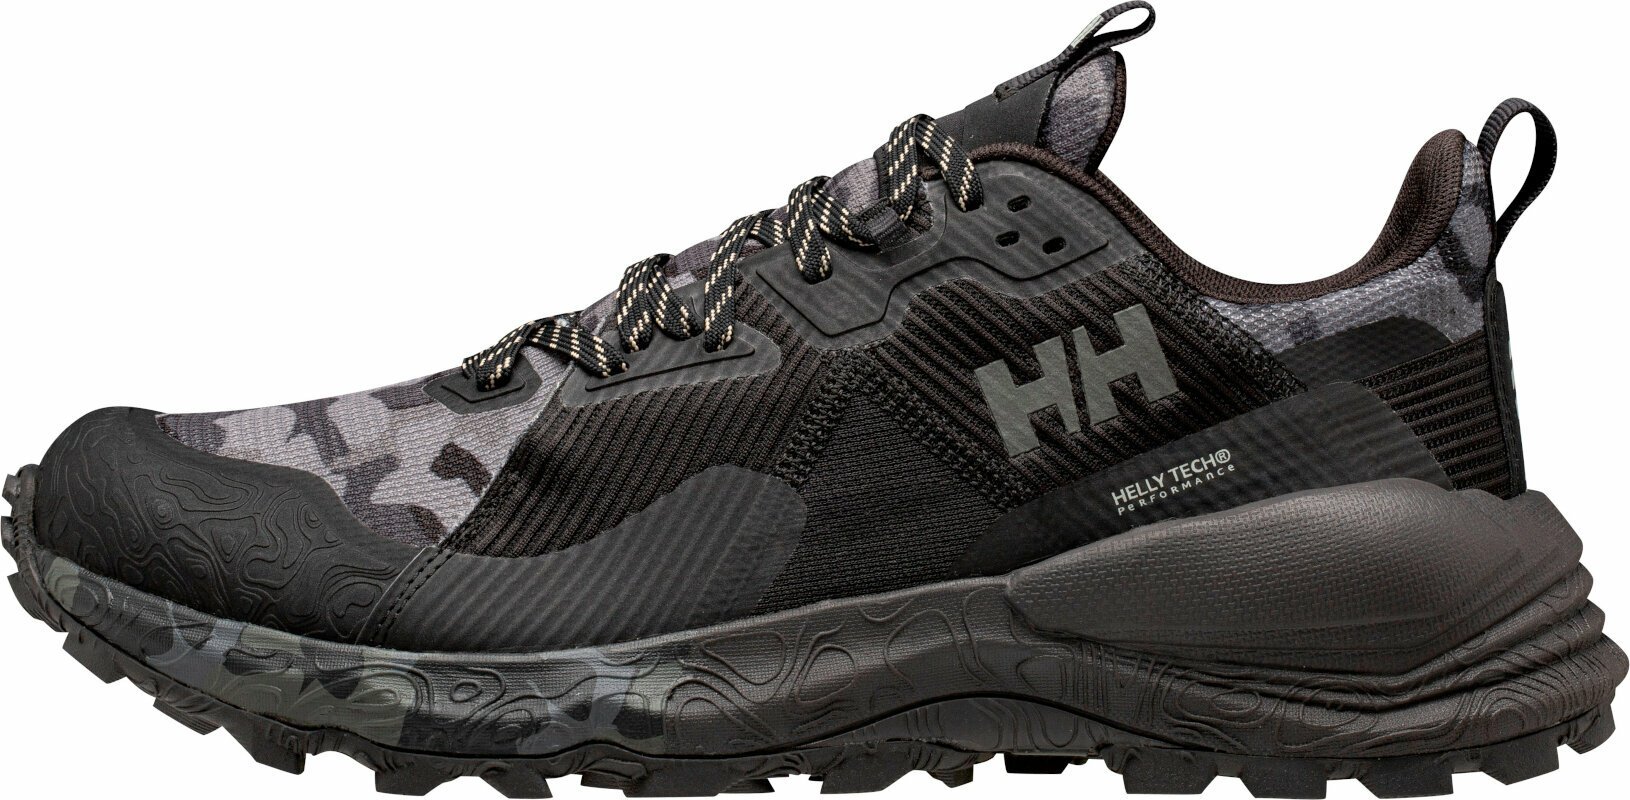 Trailschoenen Helly Hansen Men's Hawk Stapro Trail Running High Top Shoes  Black/Phantom Ebony 41 Trailschoenen